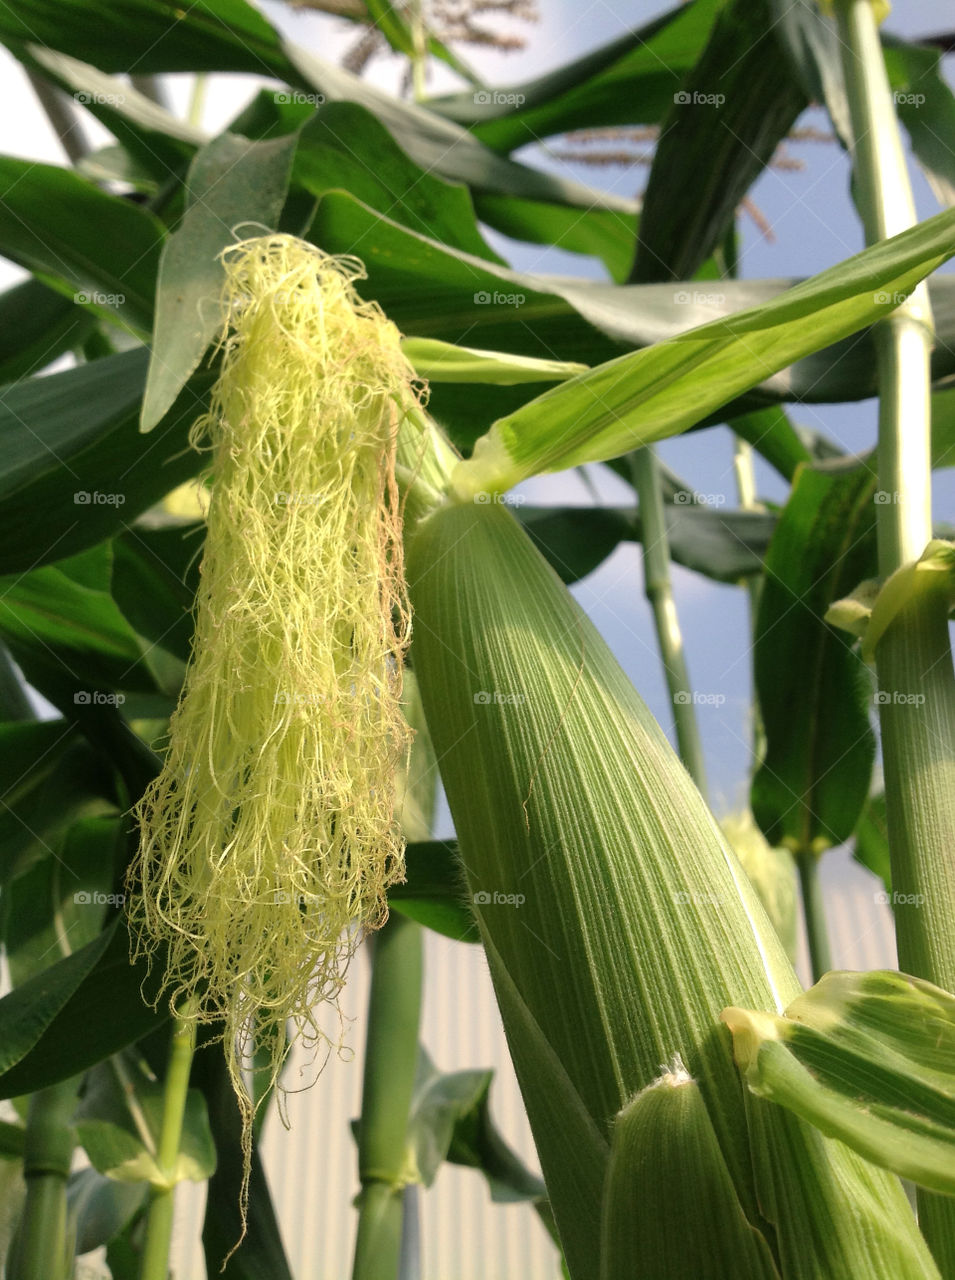 united kingdom harvest corn crops by andyjbee